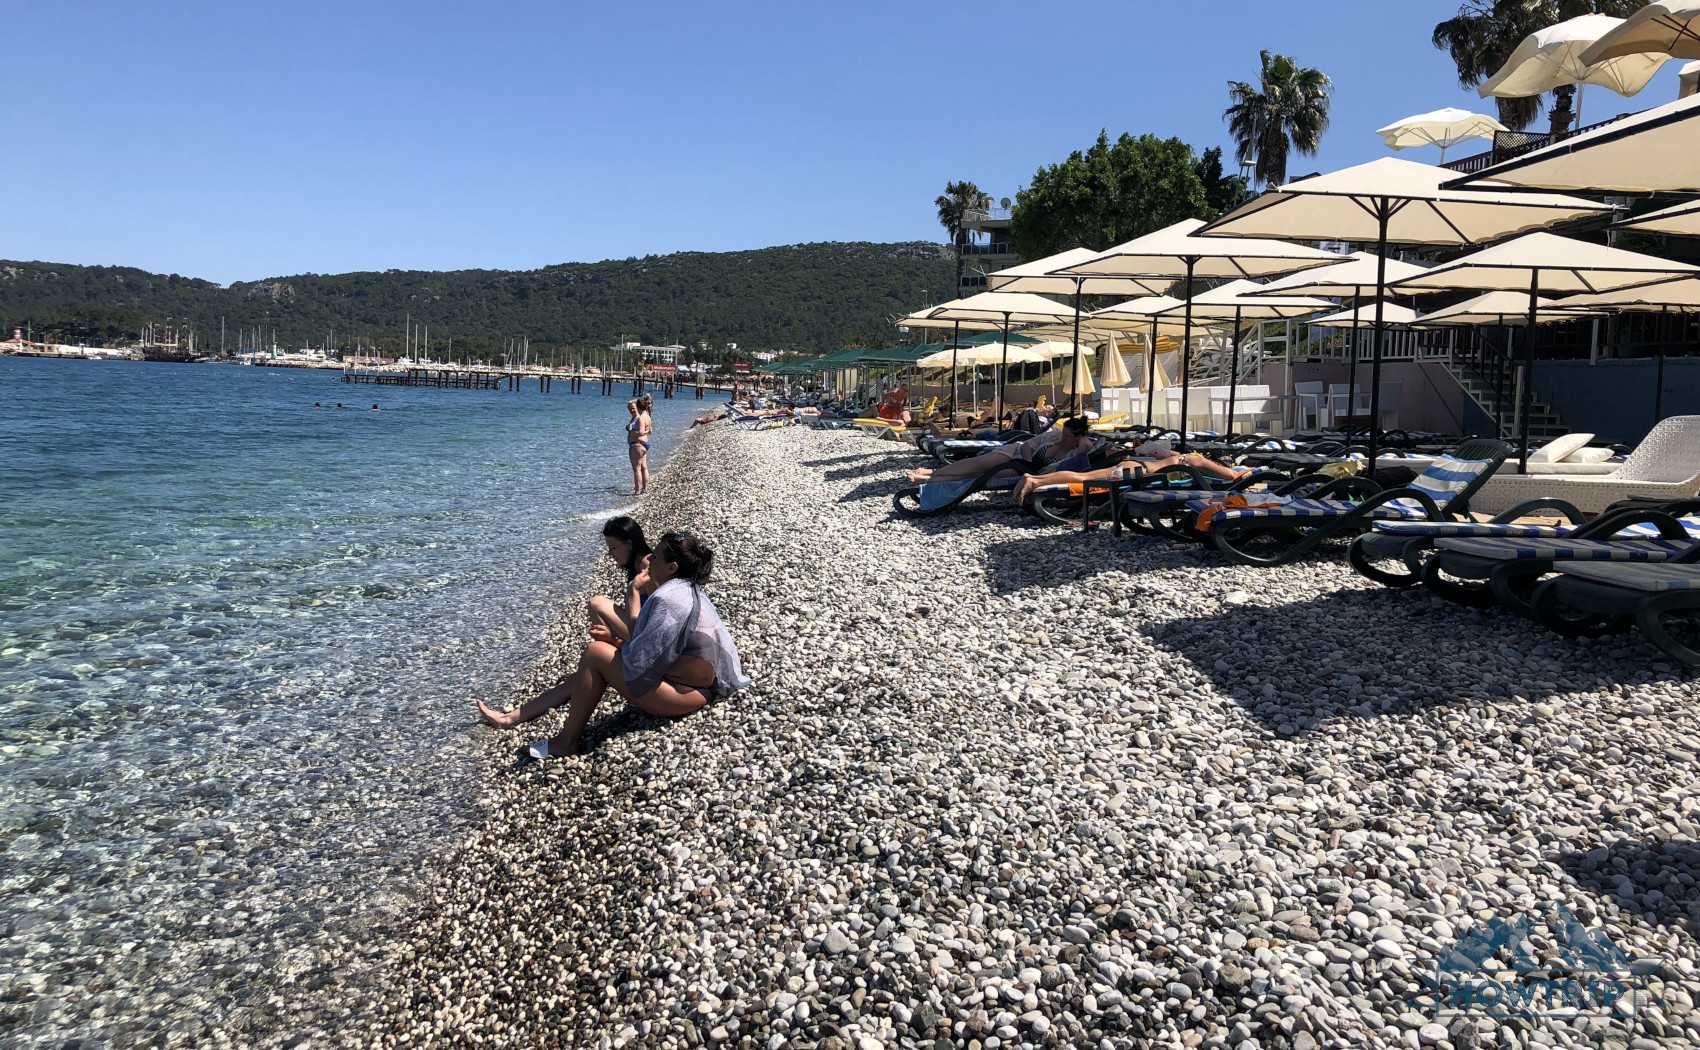 Турция в сентябре: где лучше отдохнуть, обзор курортов и советы туристам - gkd.ru